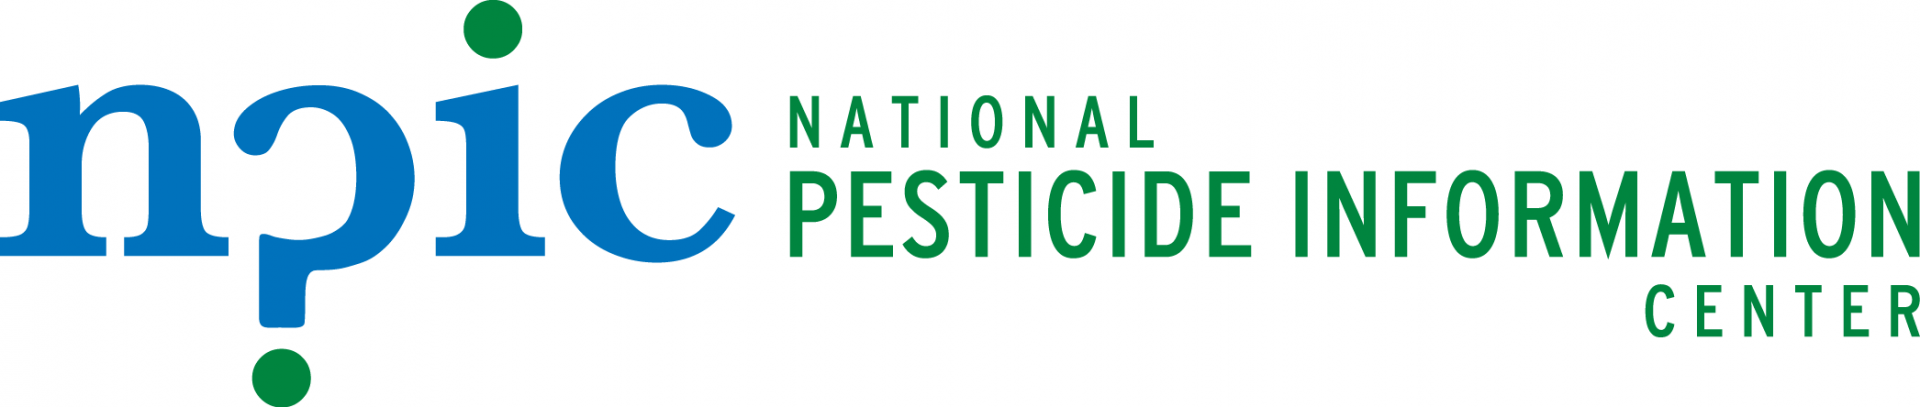 National Pesticide Information Center logo